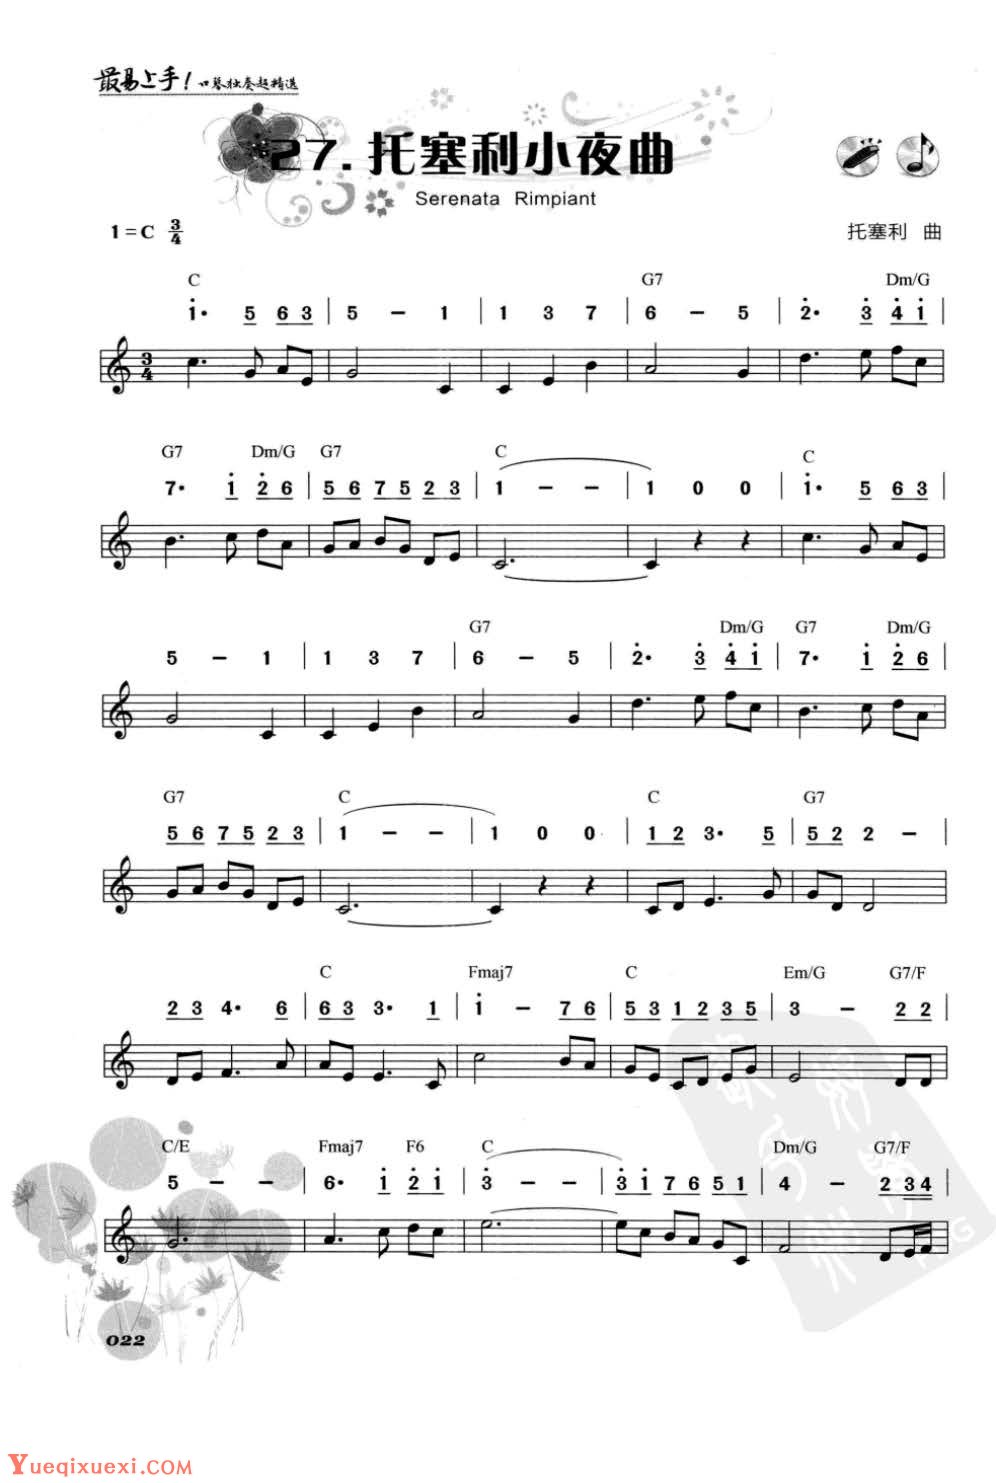 口琴古典名曲《托塞利小夜曲》简谱与五线谱对照